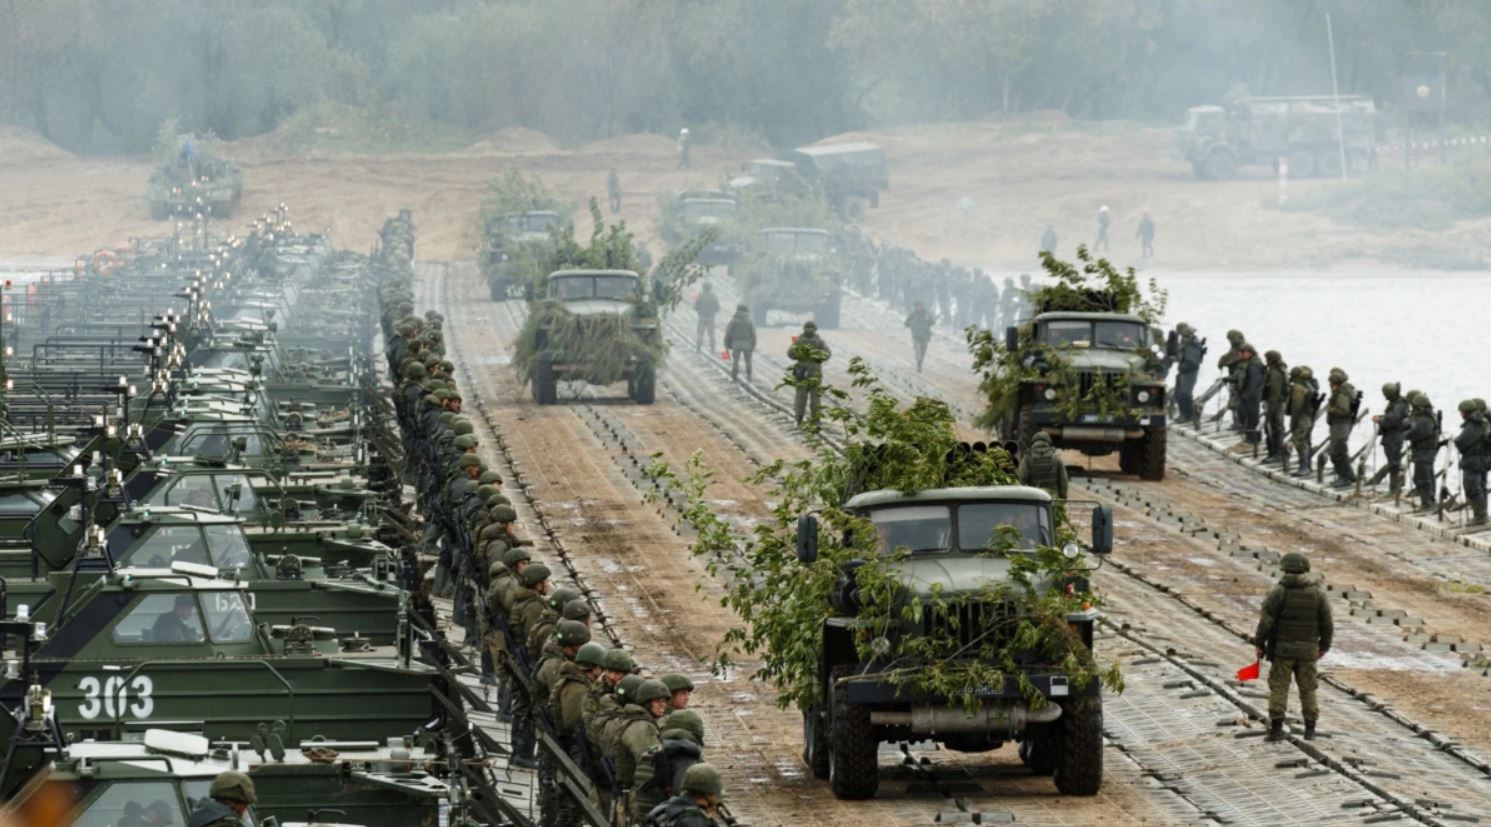 Bloomberg: Россия продолжает стягивать военную технику и наращивать войска у границ с Украиной - снимок со спутника